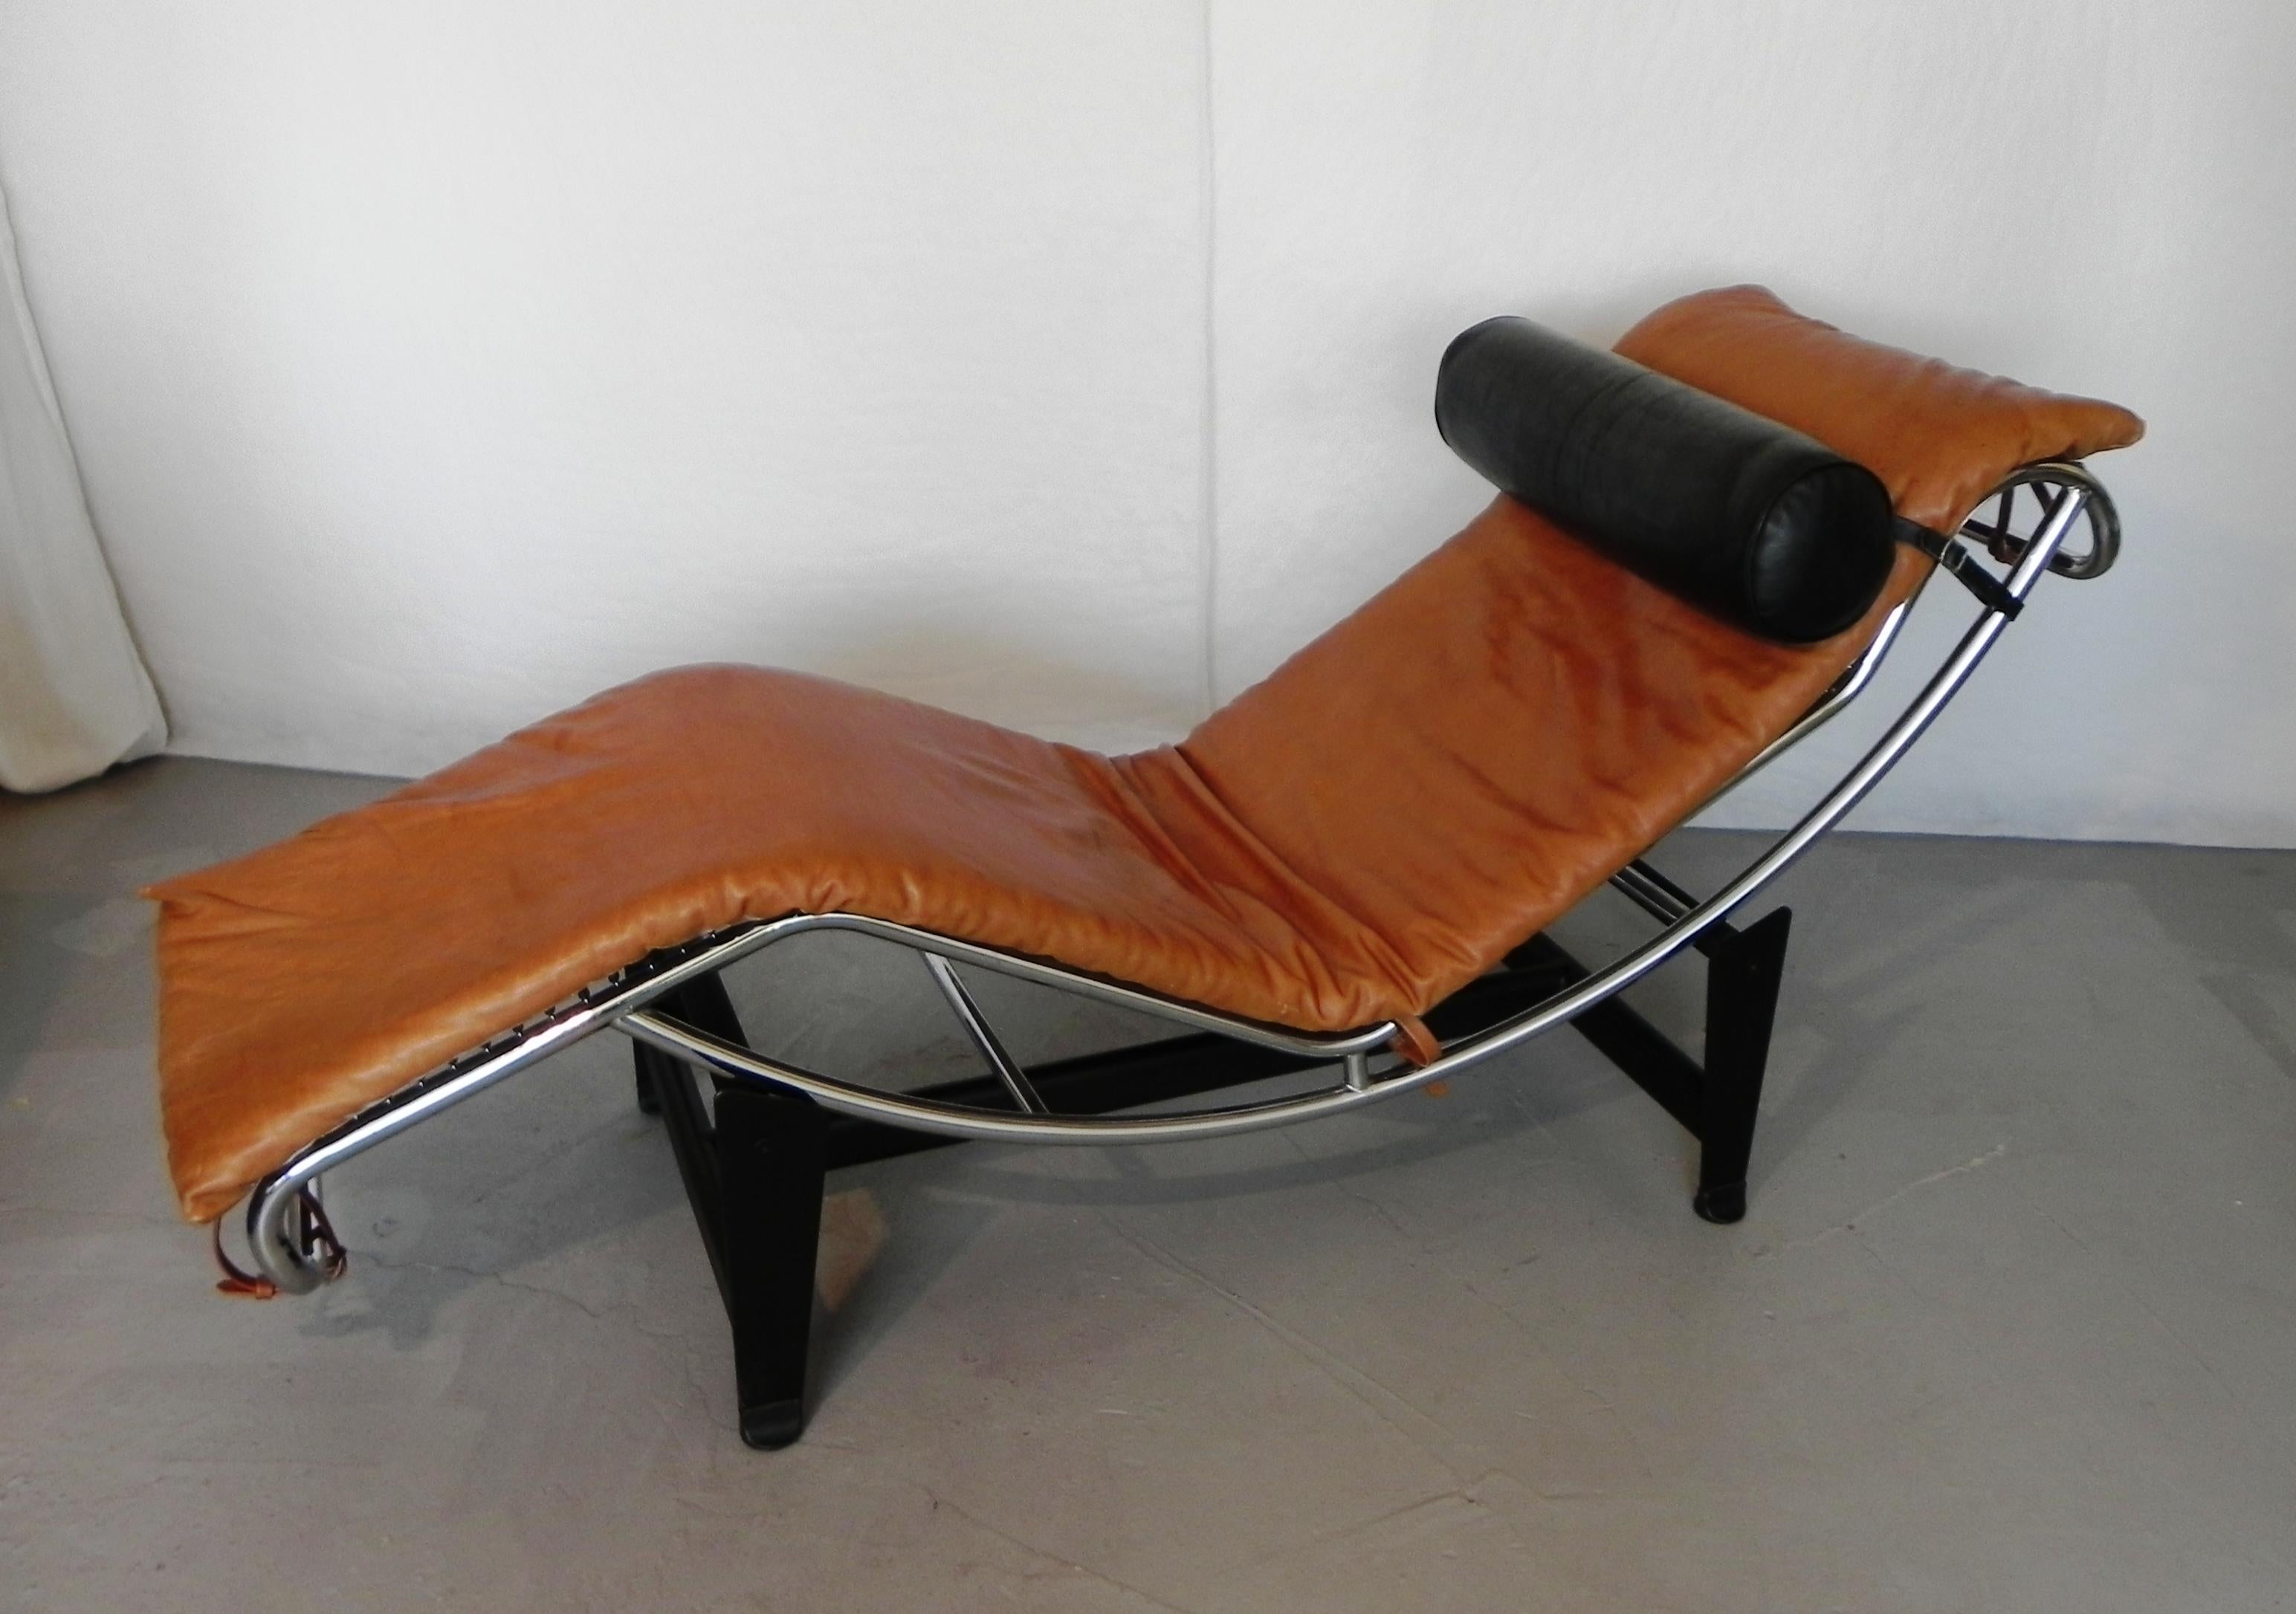 chaise longue di ispirazione Bauhaus, anni 80. struttura un tubo cromato, base in acciaio verniciato nero. cuscinatura in vera pelle di qualita' Italiana, eseguita su misura da abile artigiano. (piu' larga , piu' lunga , bene imbottita molto